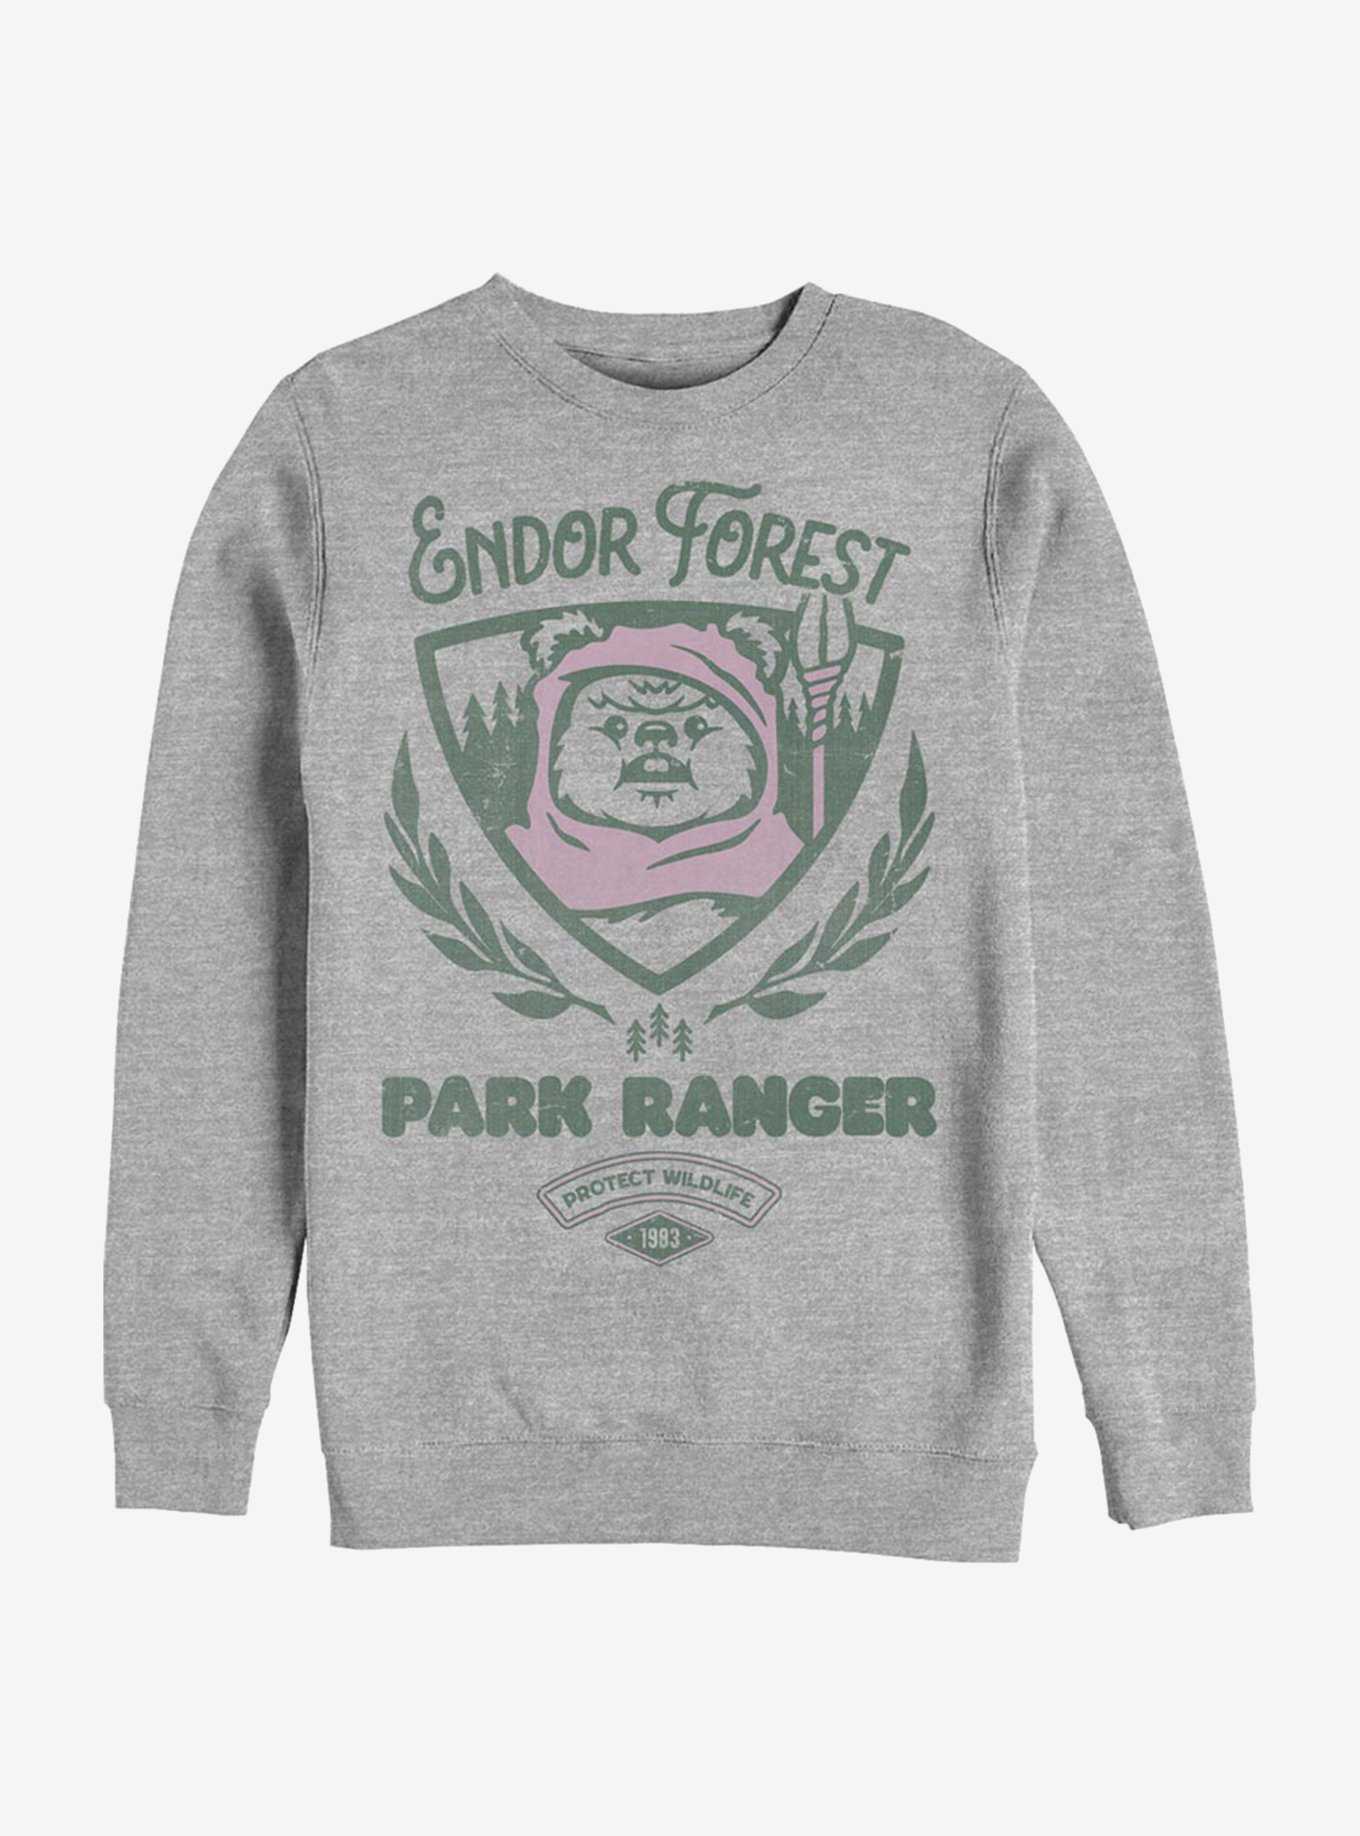 Star Wars Endor Forest Park Ranger Sweatshirt, , hi-res